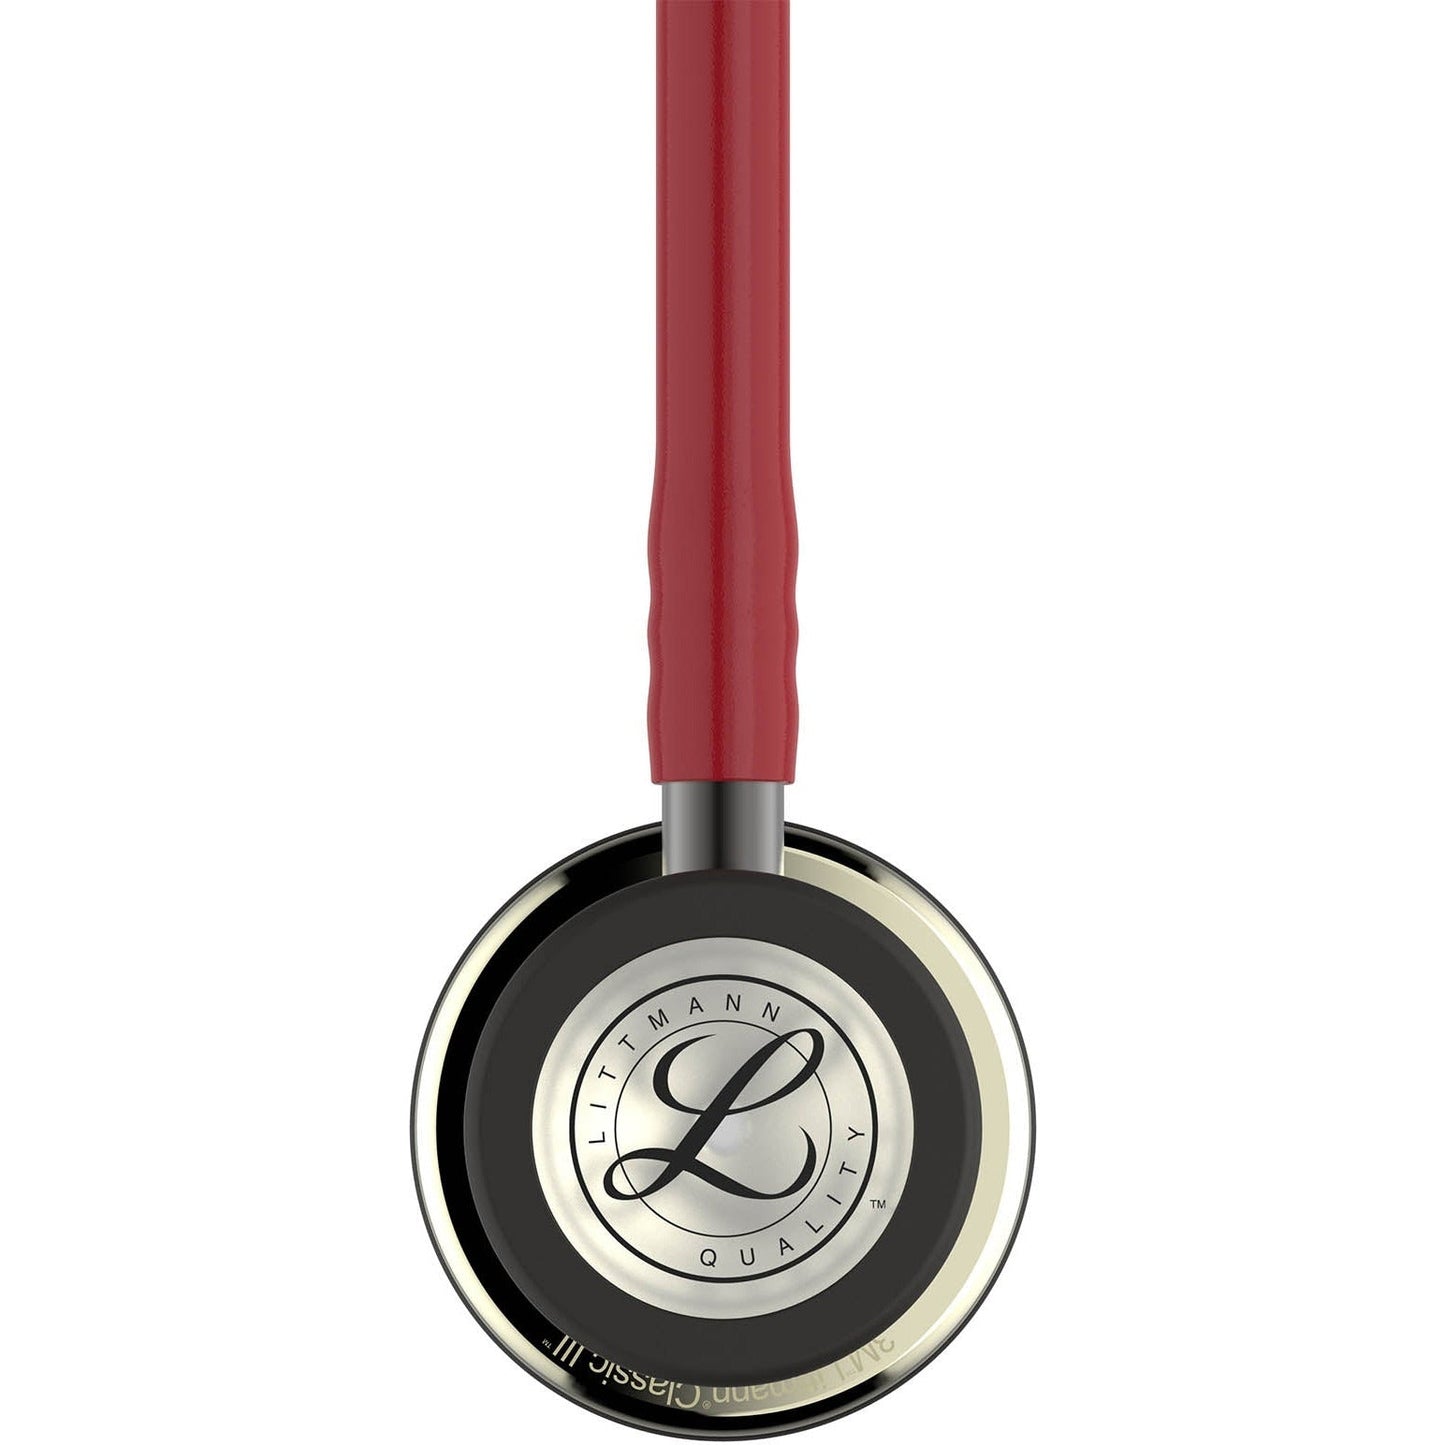 Stetoskop 3M™ Littmann® Classic III™ Monitoring, zaključna obdelava membranskega nastavka v barvi šampanjca, bordo rdeča cev, slušalke in osnova v temni barvi, 68,5 cm, 5864